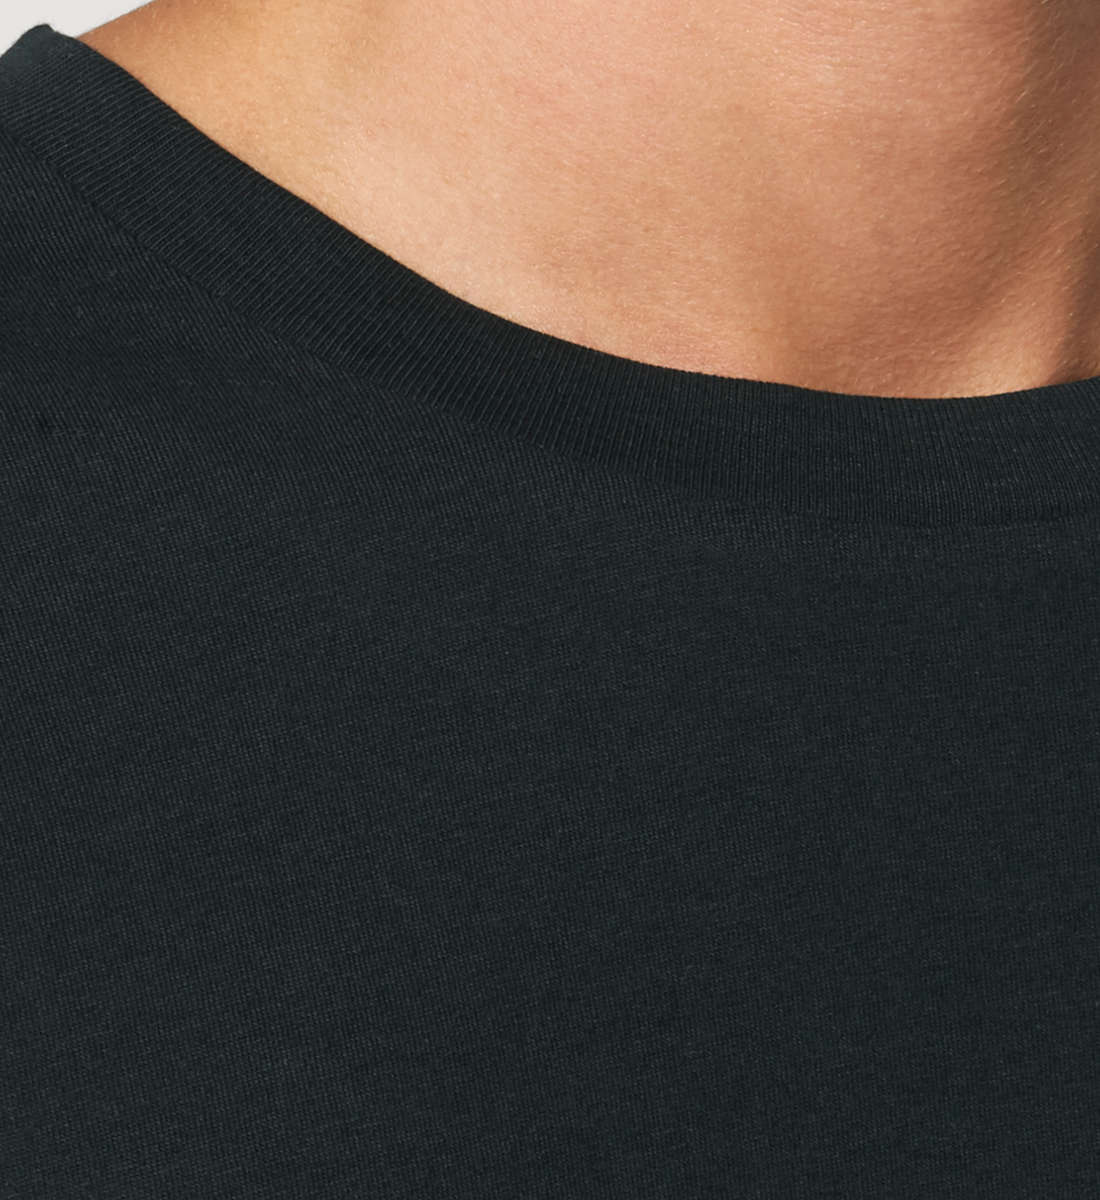 Schwarzes T-Shirt Unisex Relaxed Fit für Frauen und Männer bedruckt mit dem Design der Roger Rockawoo Kollektion black is my happy colour